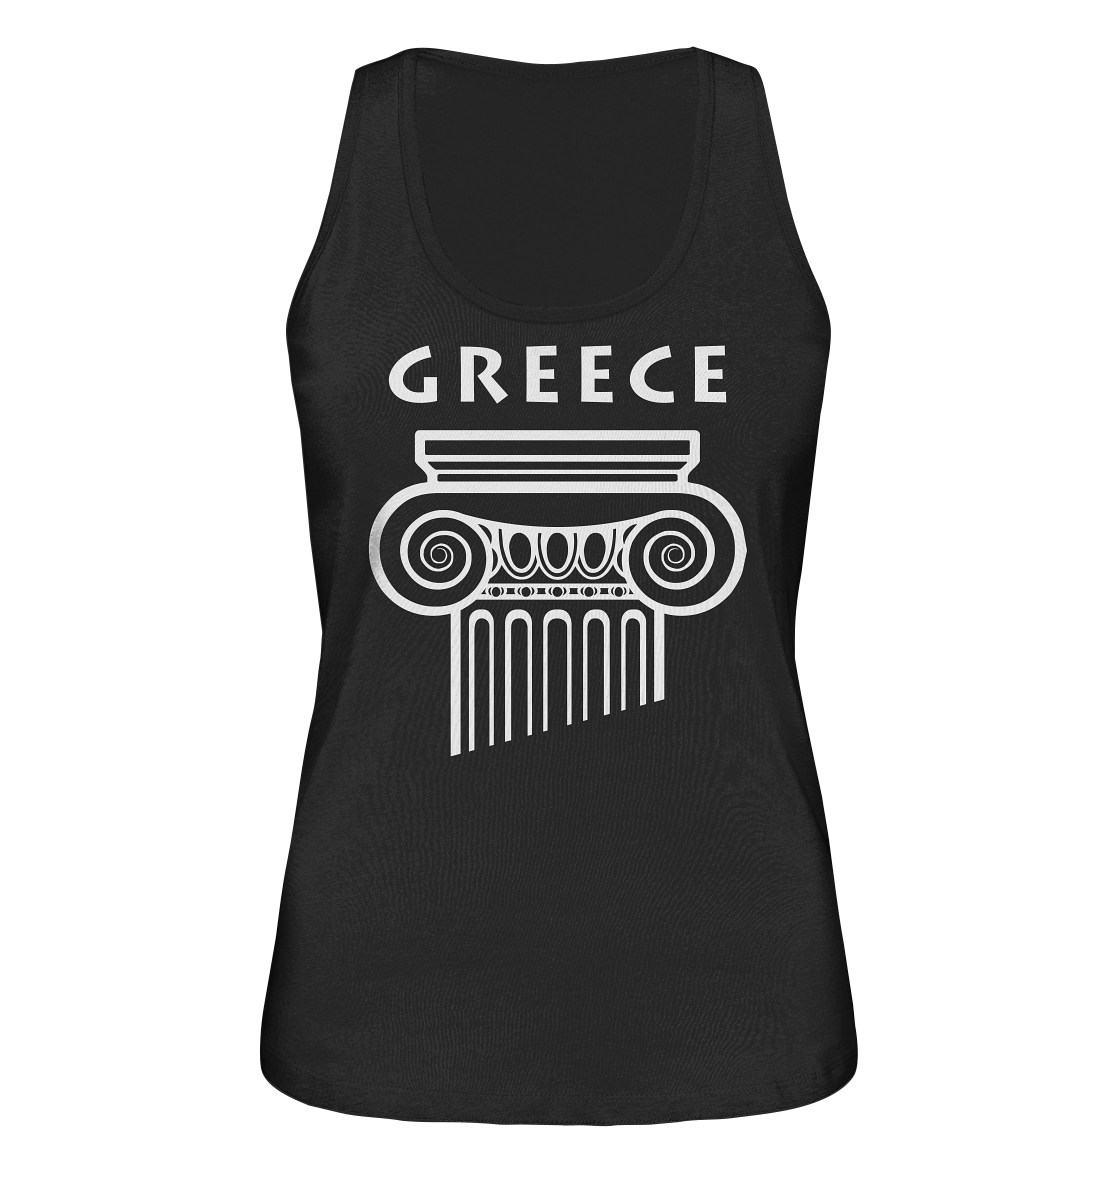 Greece Griechischer Säulenkopf - Ladies Organic Tank-Top